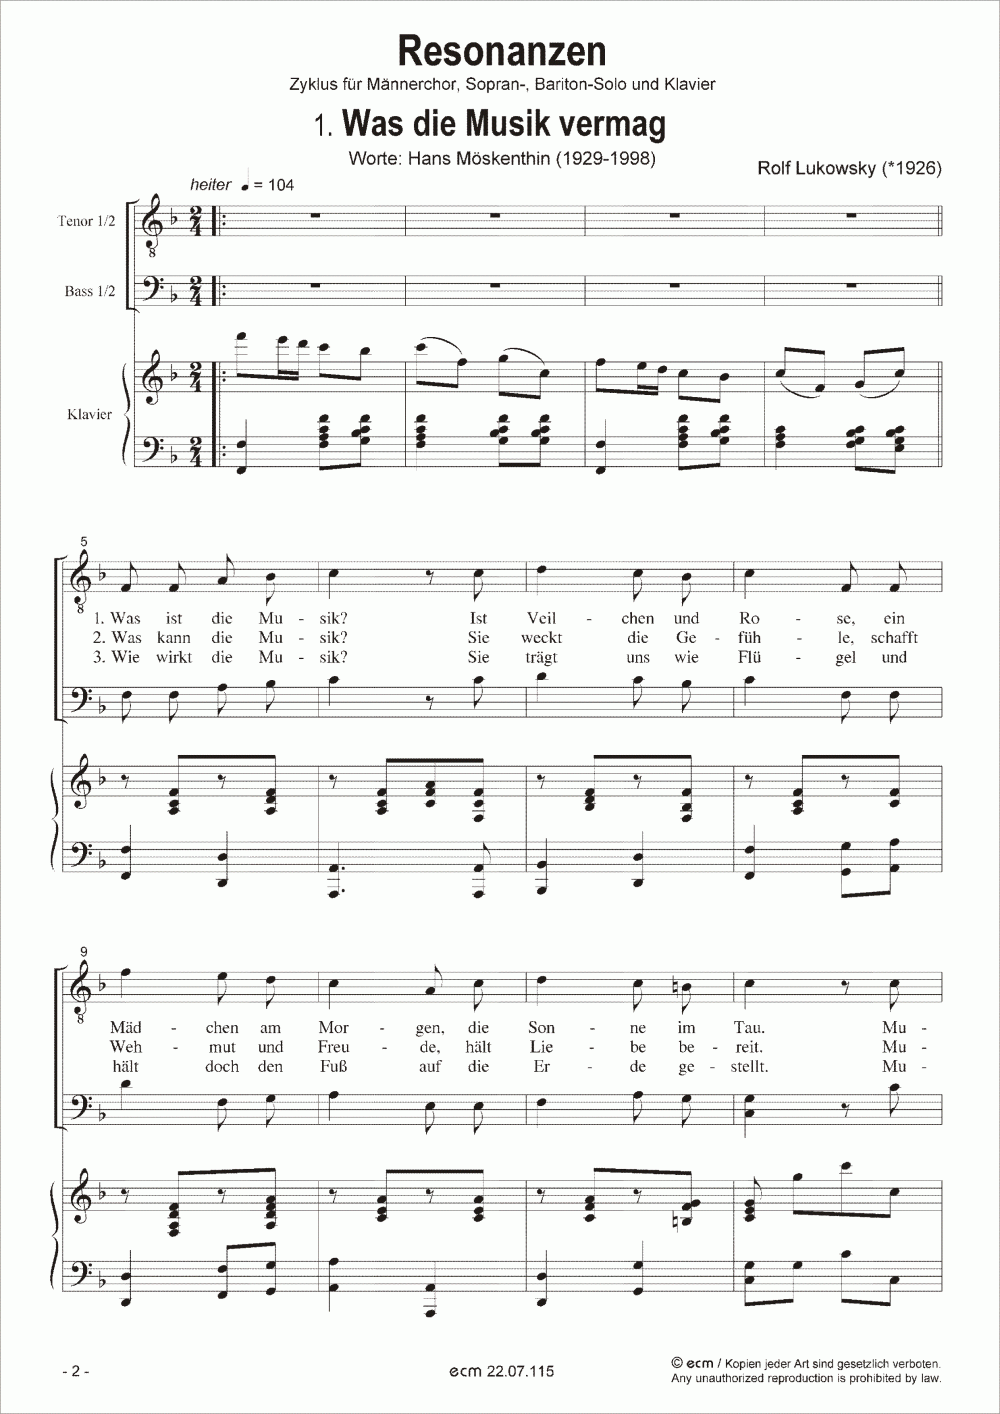 Resonanzen (Piano score)